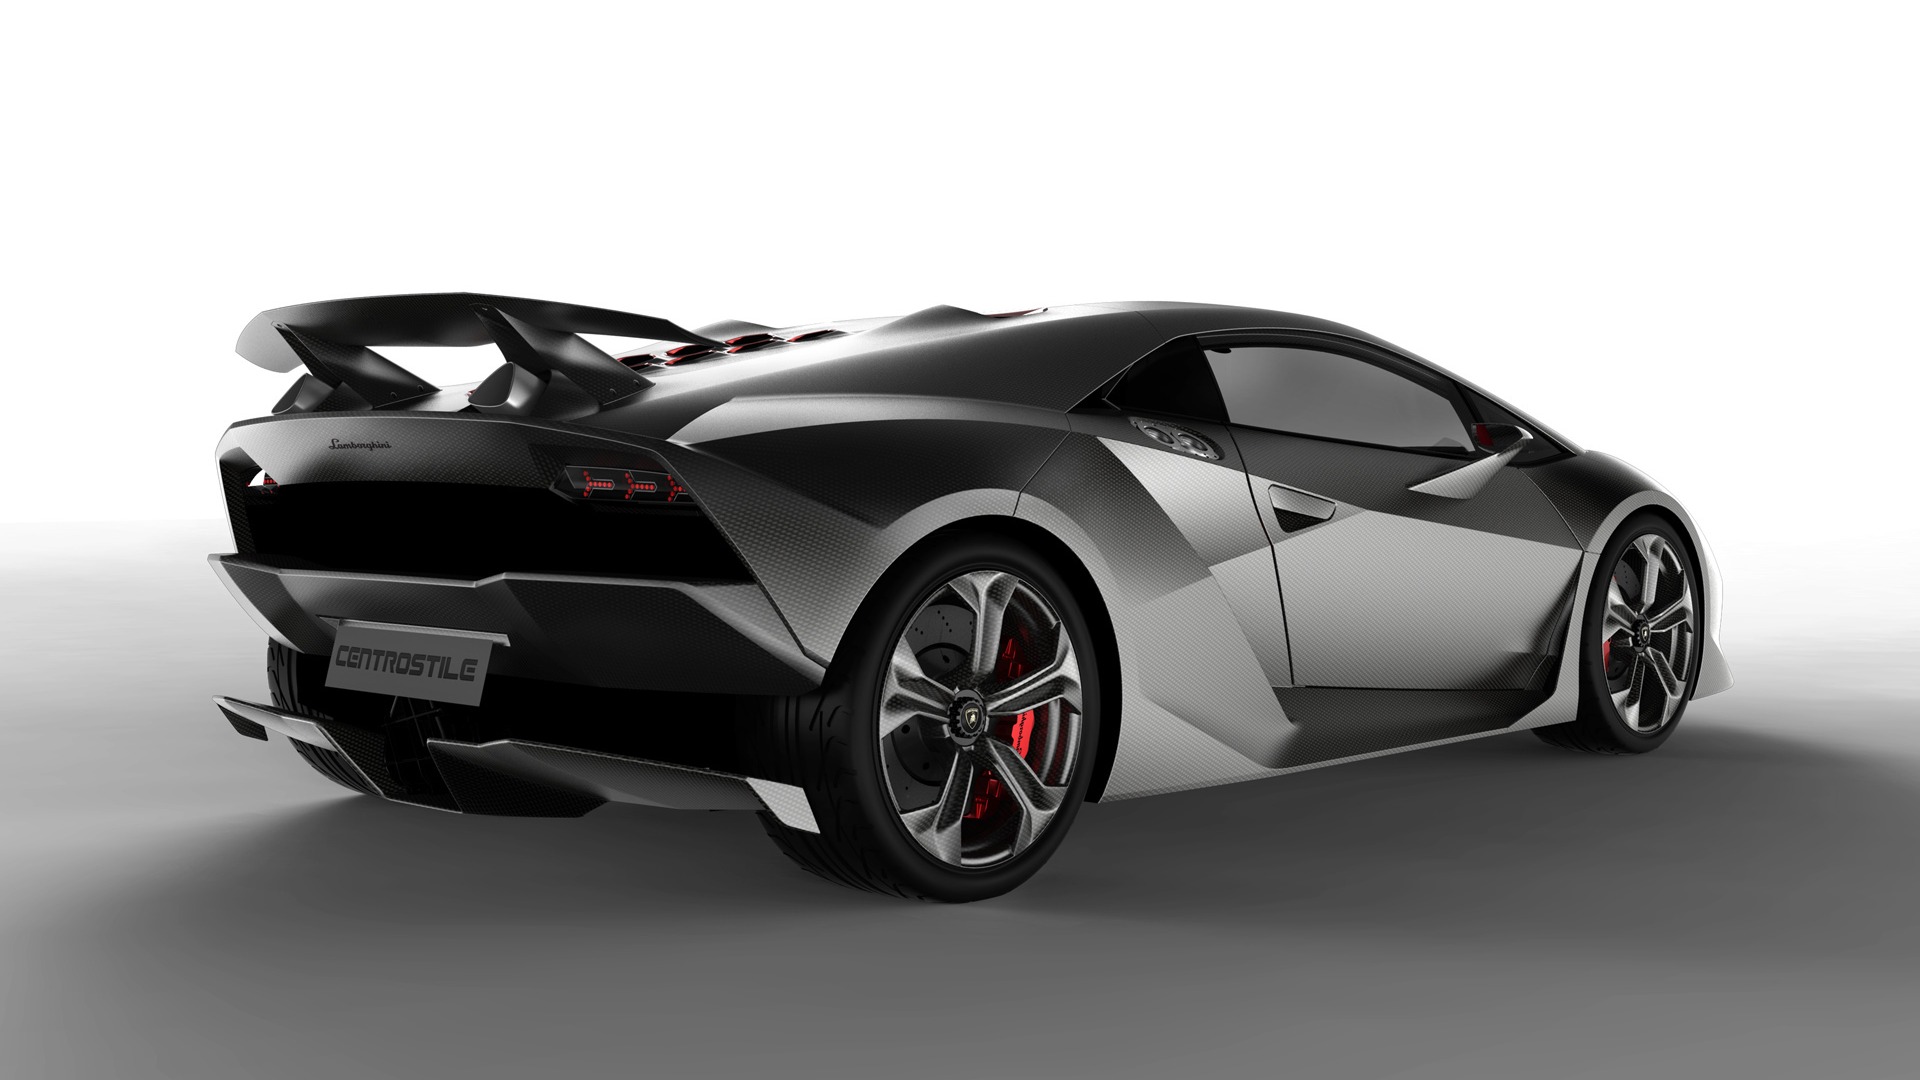 Lamborghini Concept Car Sesto Elemento - 2010 HD Wallpaper #2 - 1920x1080